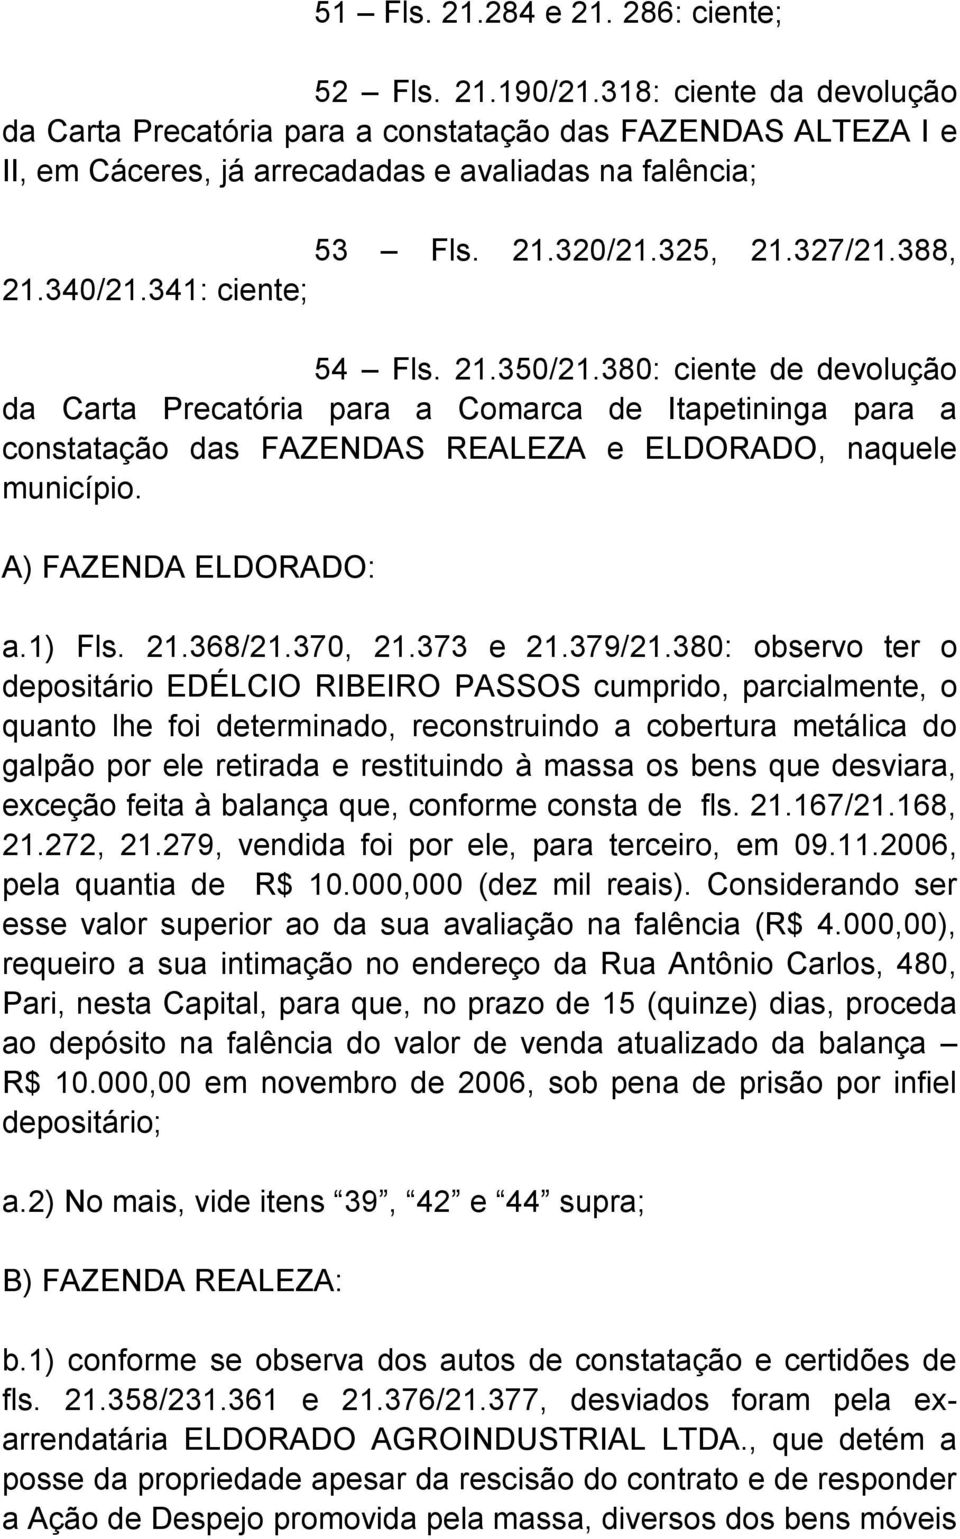 341: ciente; 54 Fls. 21.350/21.380: ciente de devolução da Carta Precatória para a Comarca de Itapetininga para a constatação das FAZENDAS REALEZA e ELDORADO, naquele município.